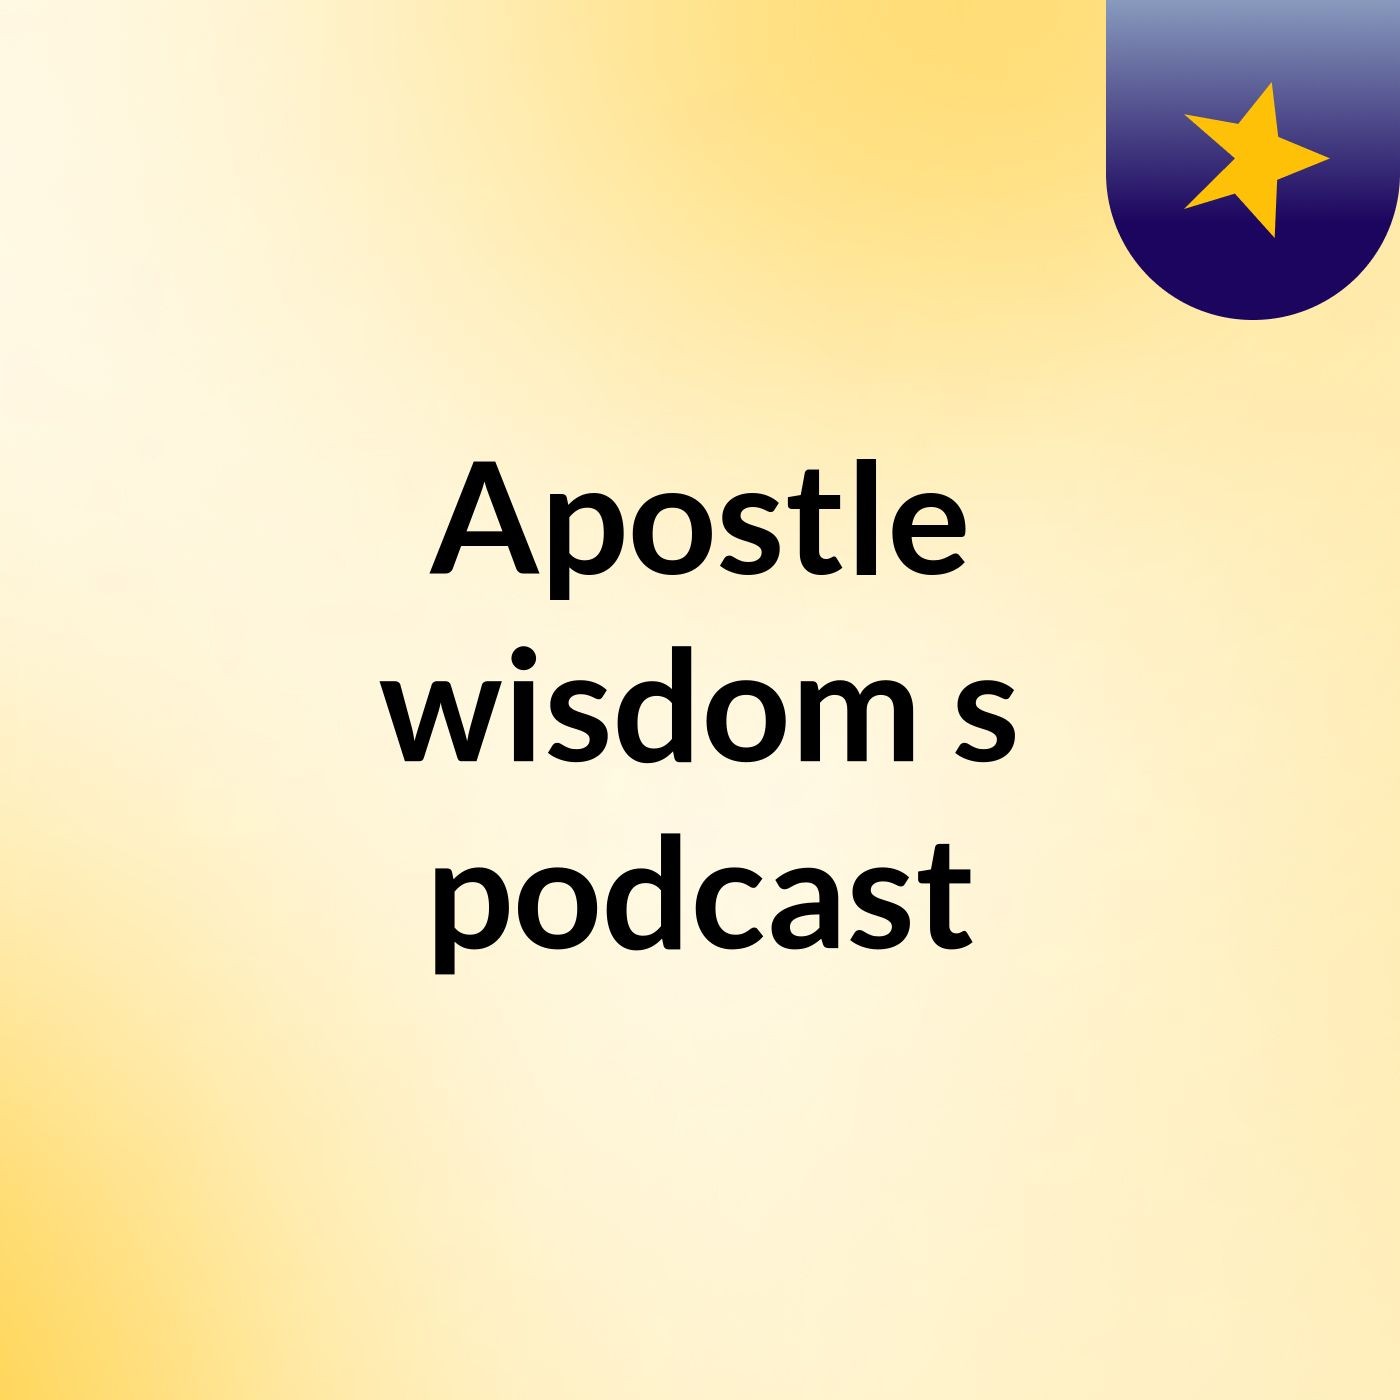 Episode 6 - Apostle wisdom's podcast